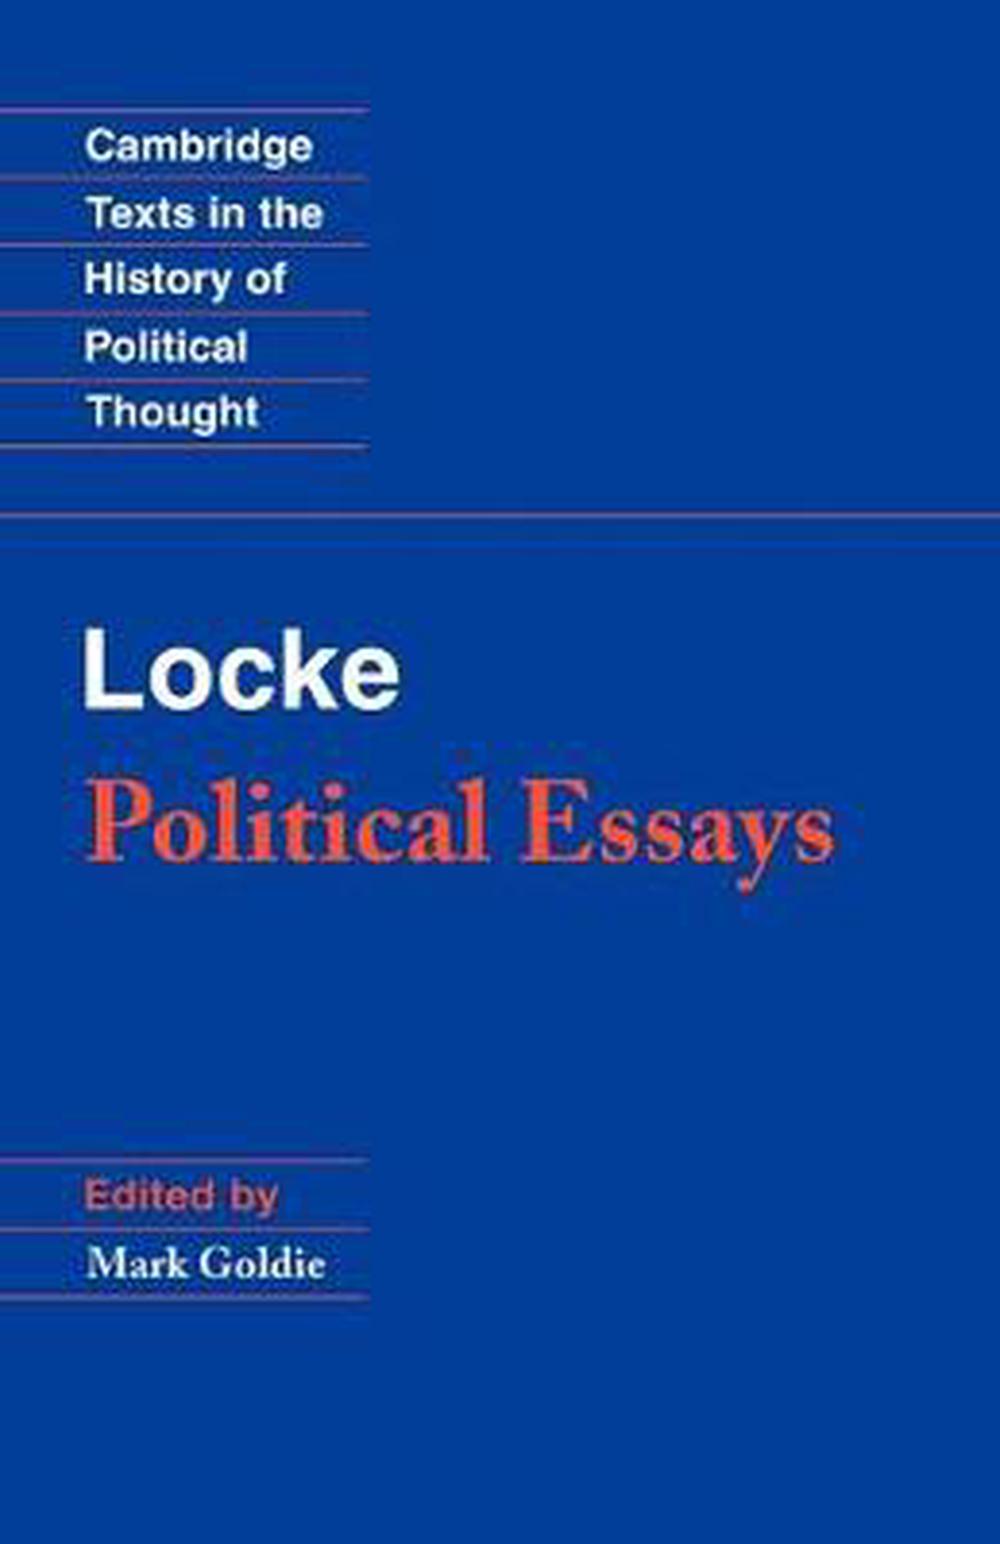 locke political essays